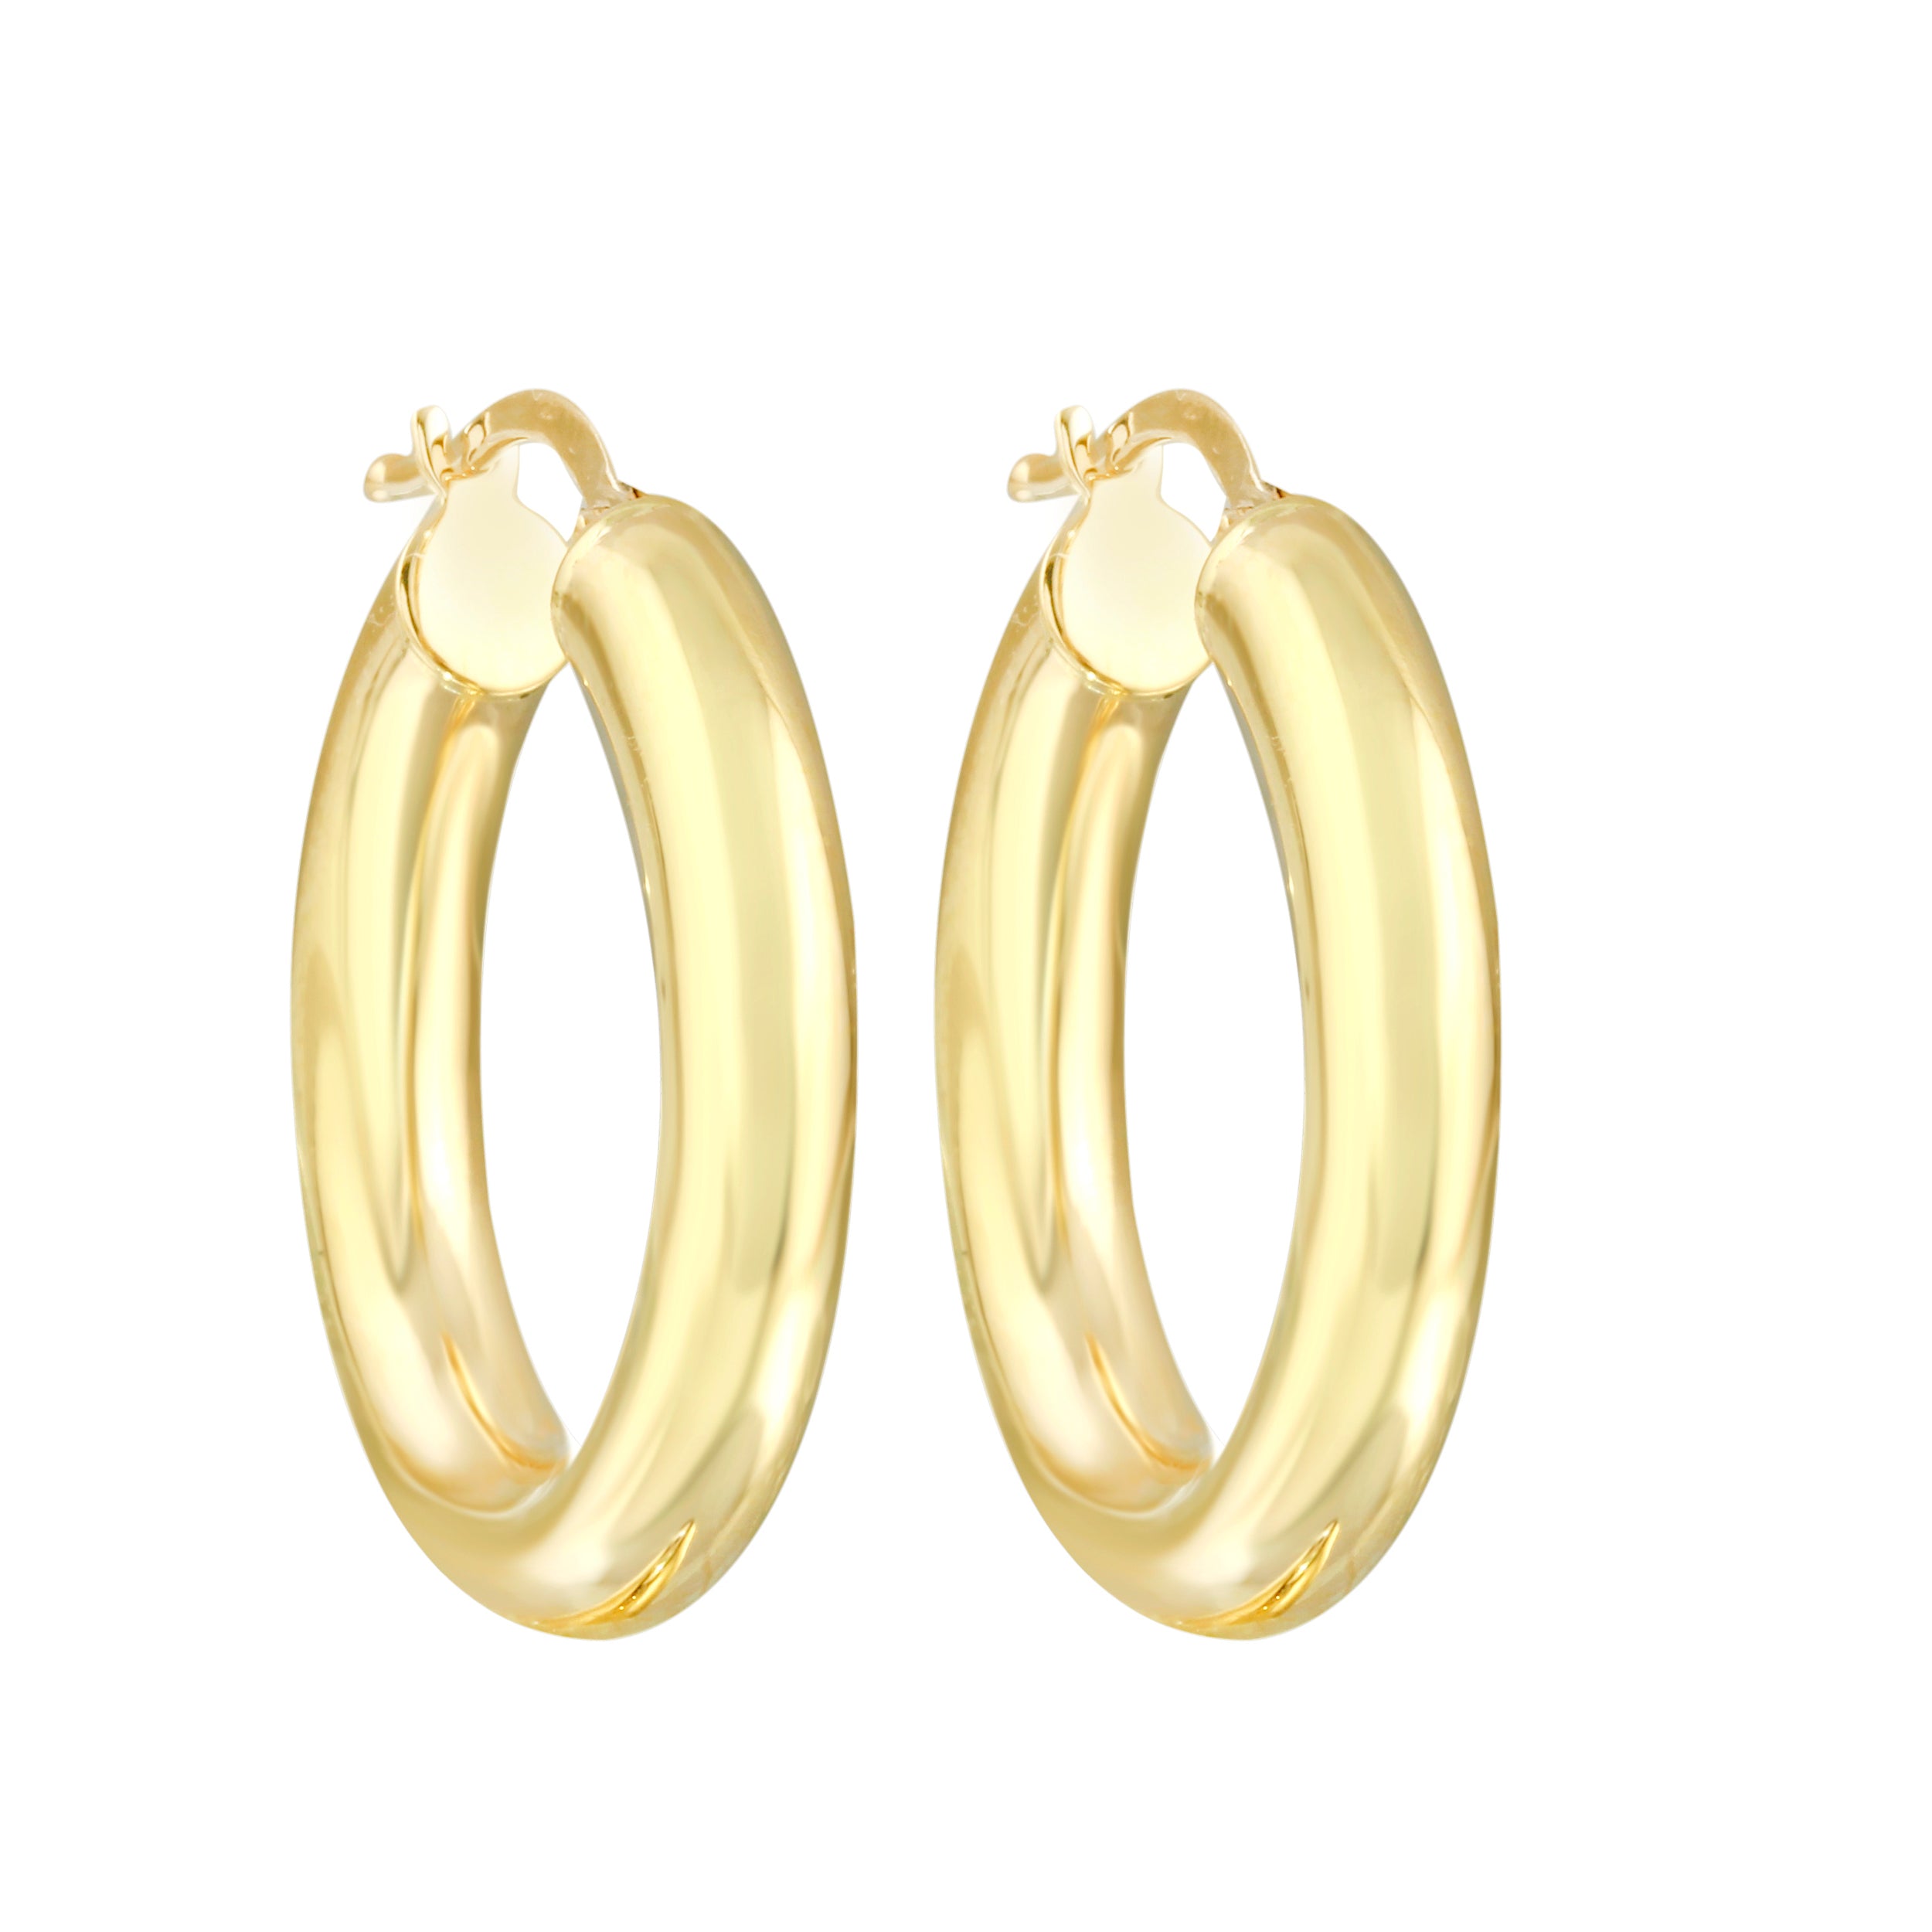 14k Gold Small Thick Hoop Earrings, 14k-Earrings-Ashley Schenkein Jewelry Design